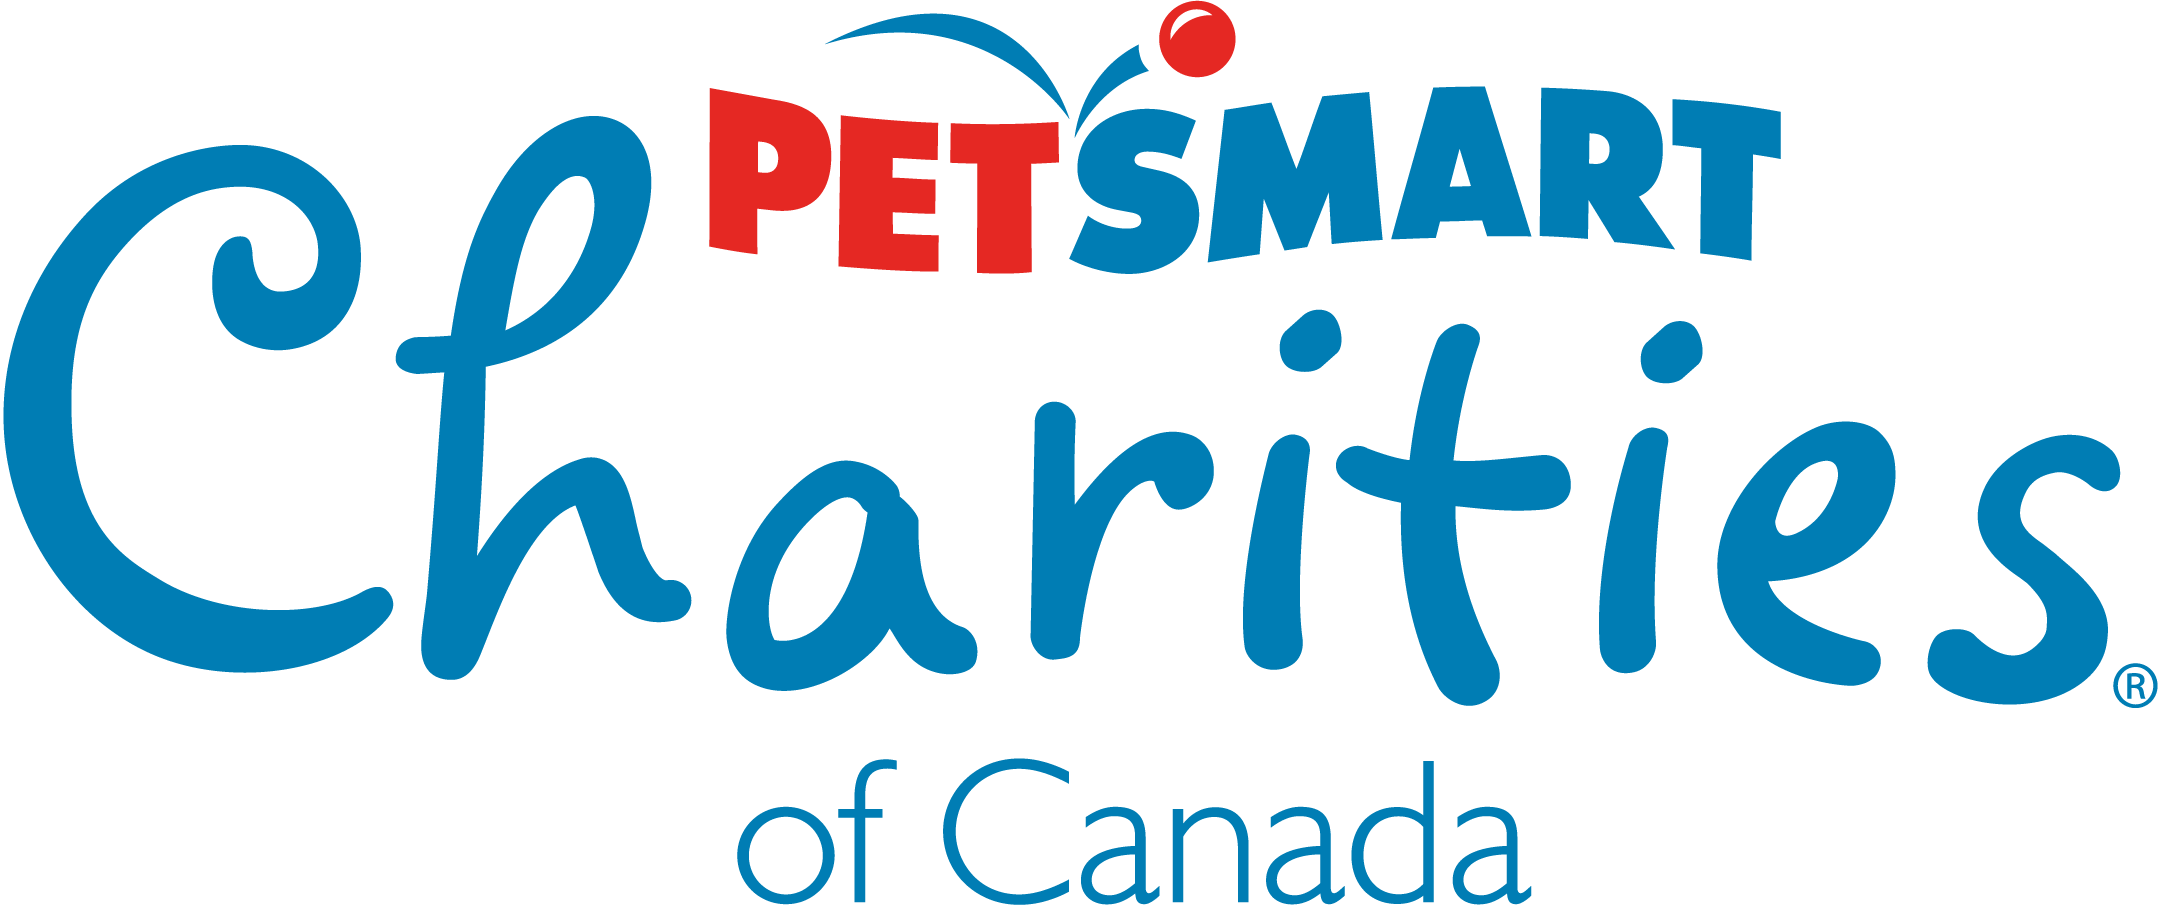 Logo de Petsmart charities of canada 2